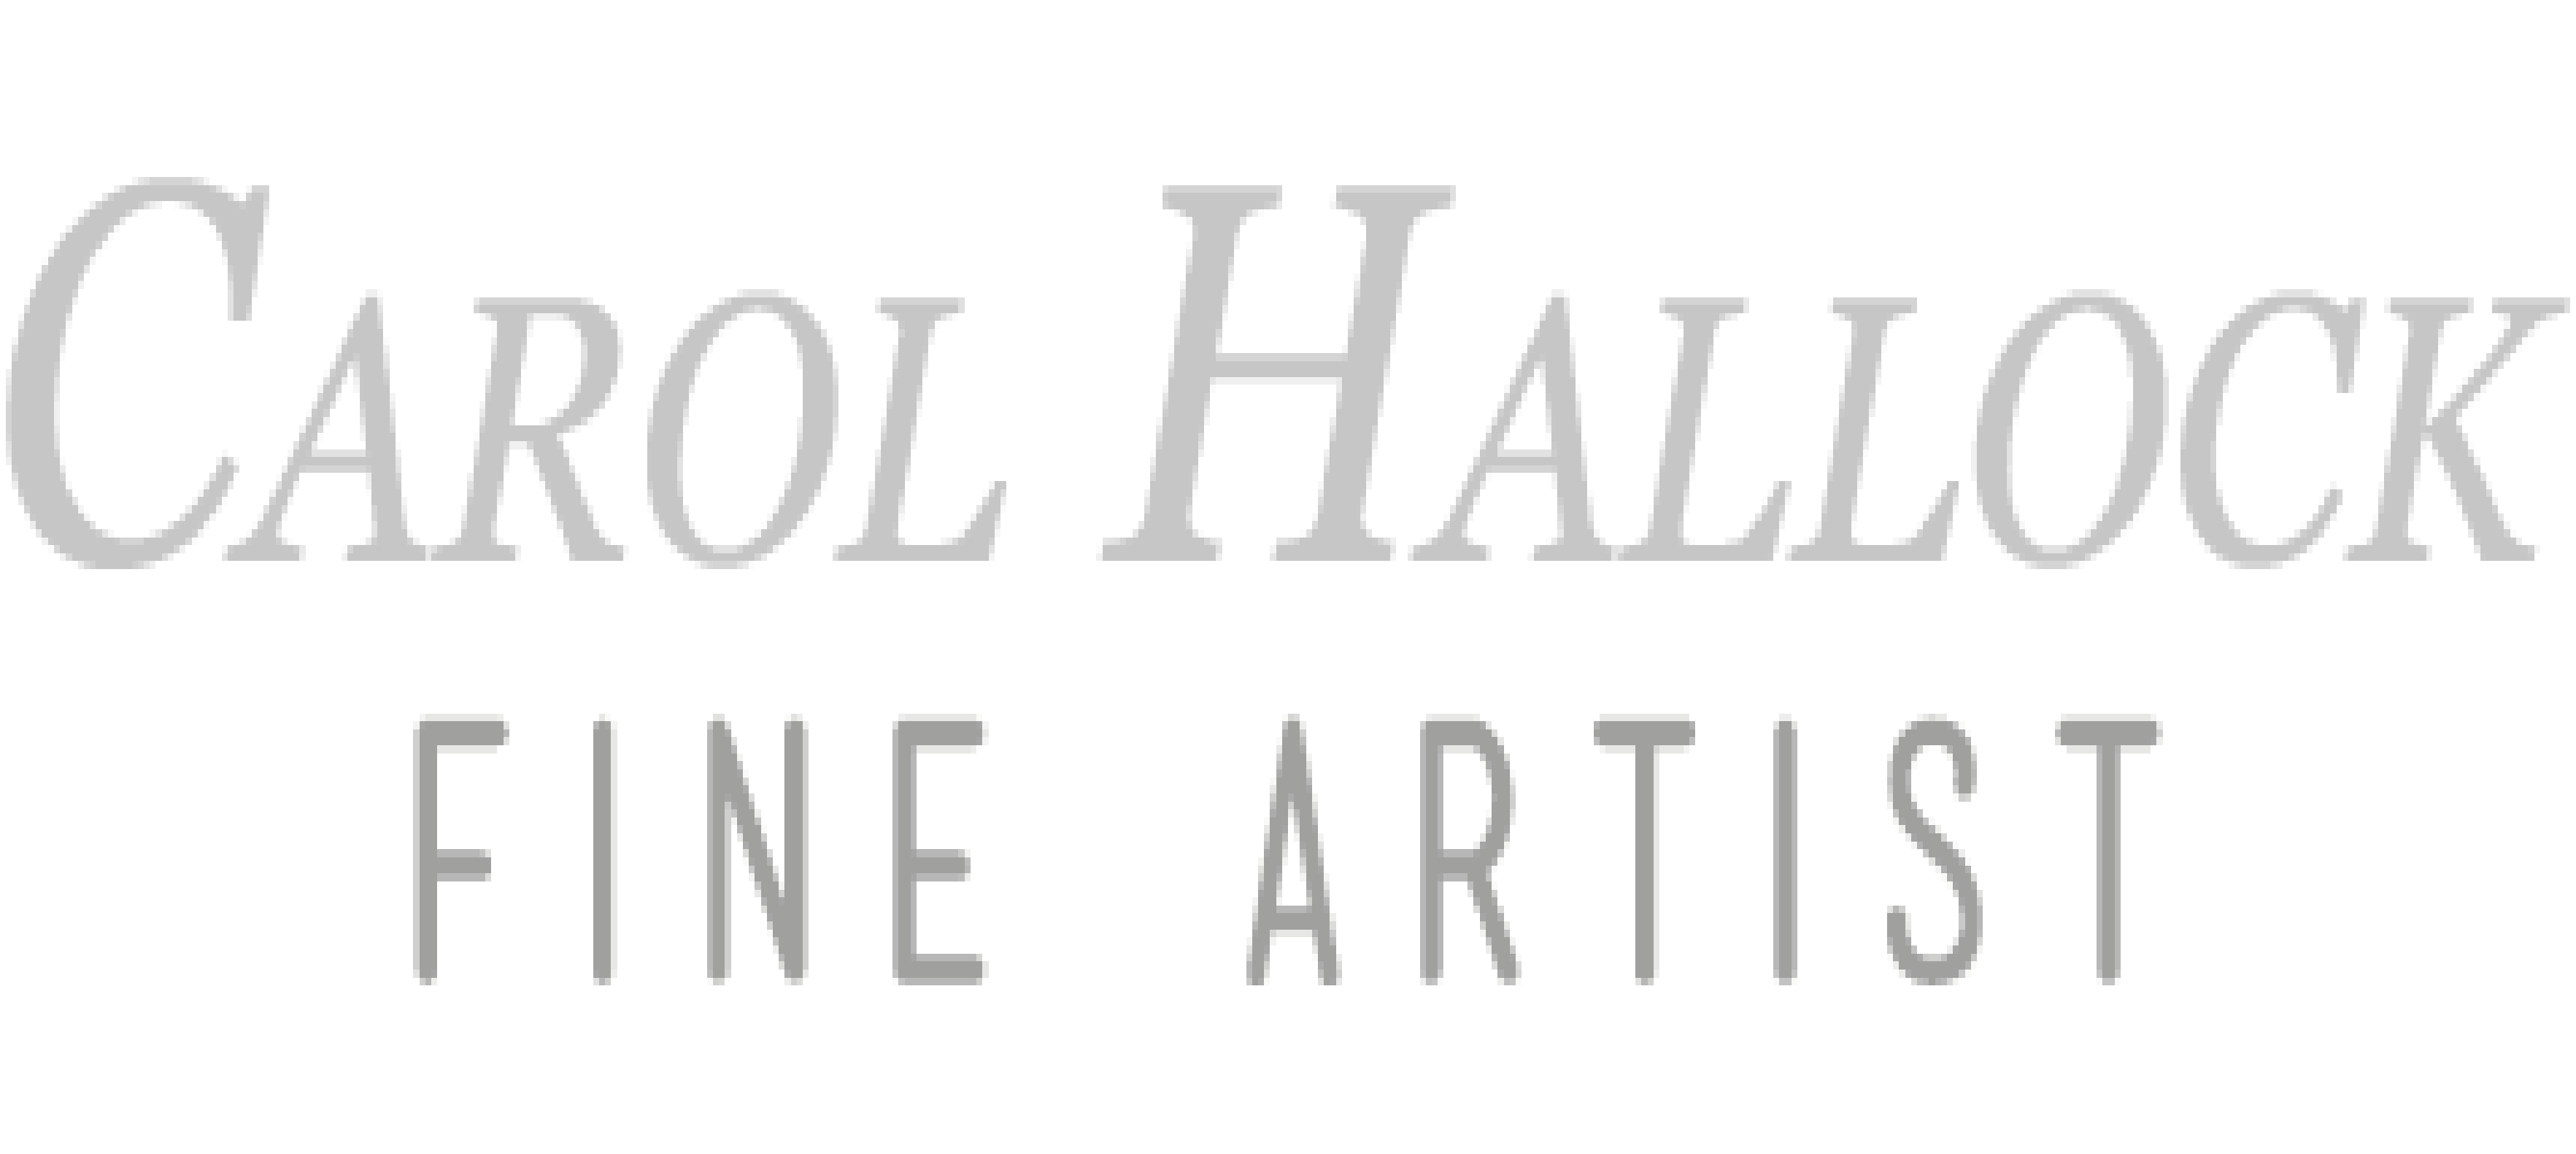 Hallock Fine Artist